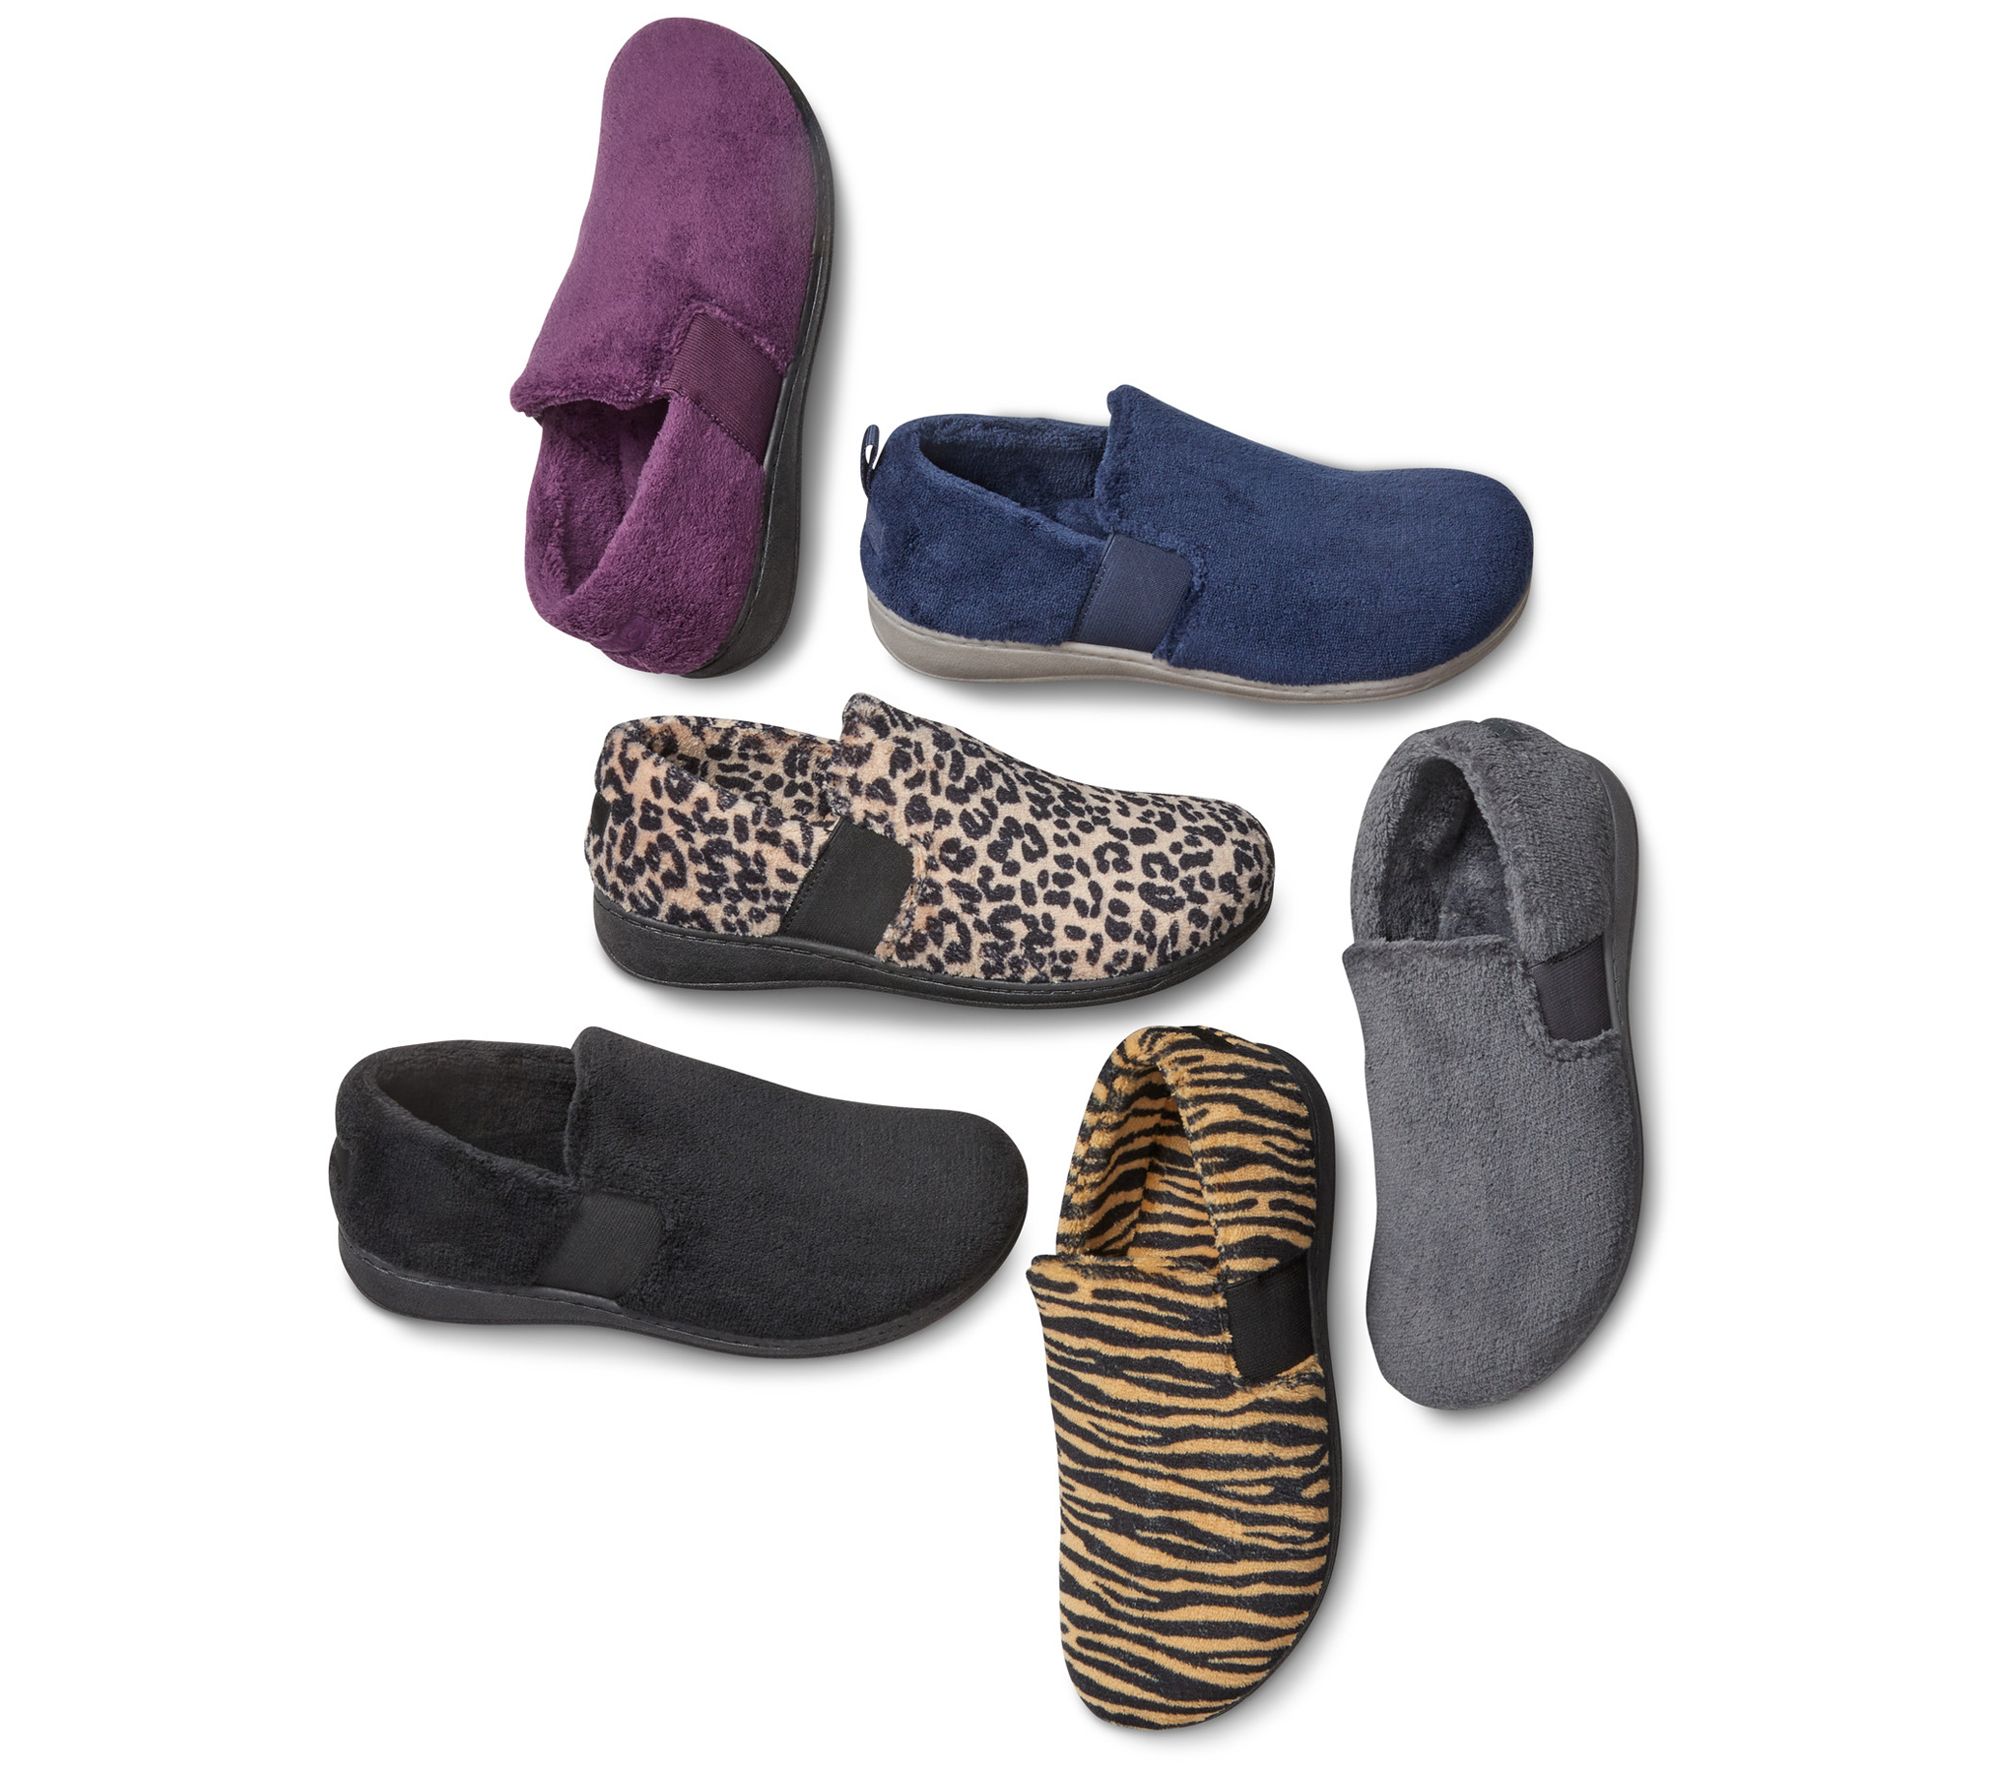 vionic bedroom slippers qvc